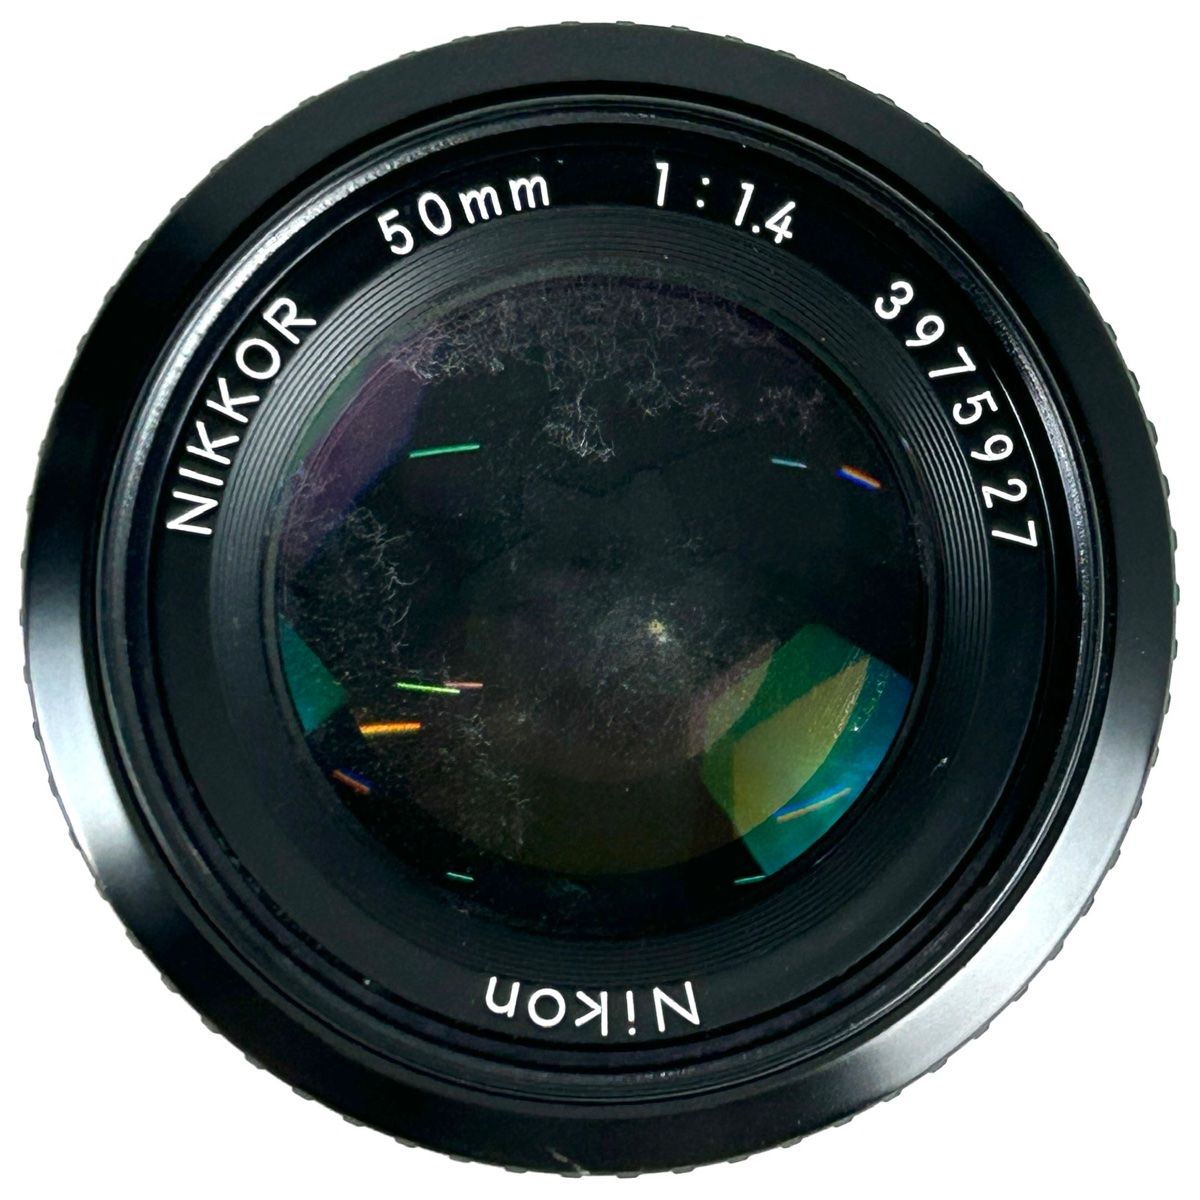 ニコン Nikon F2 フォトミック AS ブラック + Ai NIKKOR 50mm F1.4